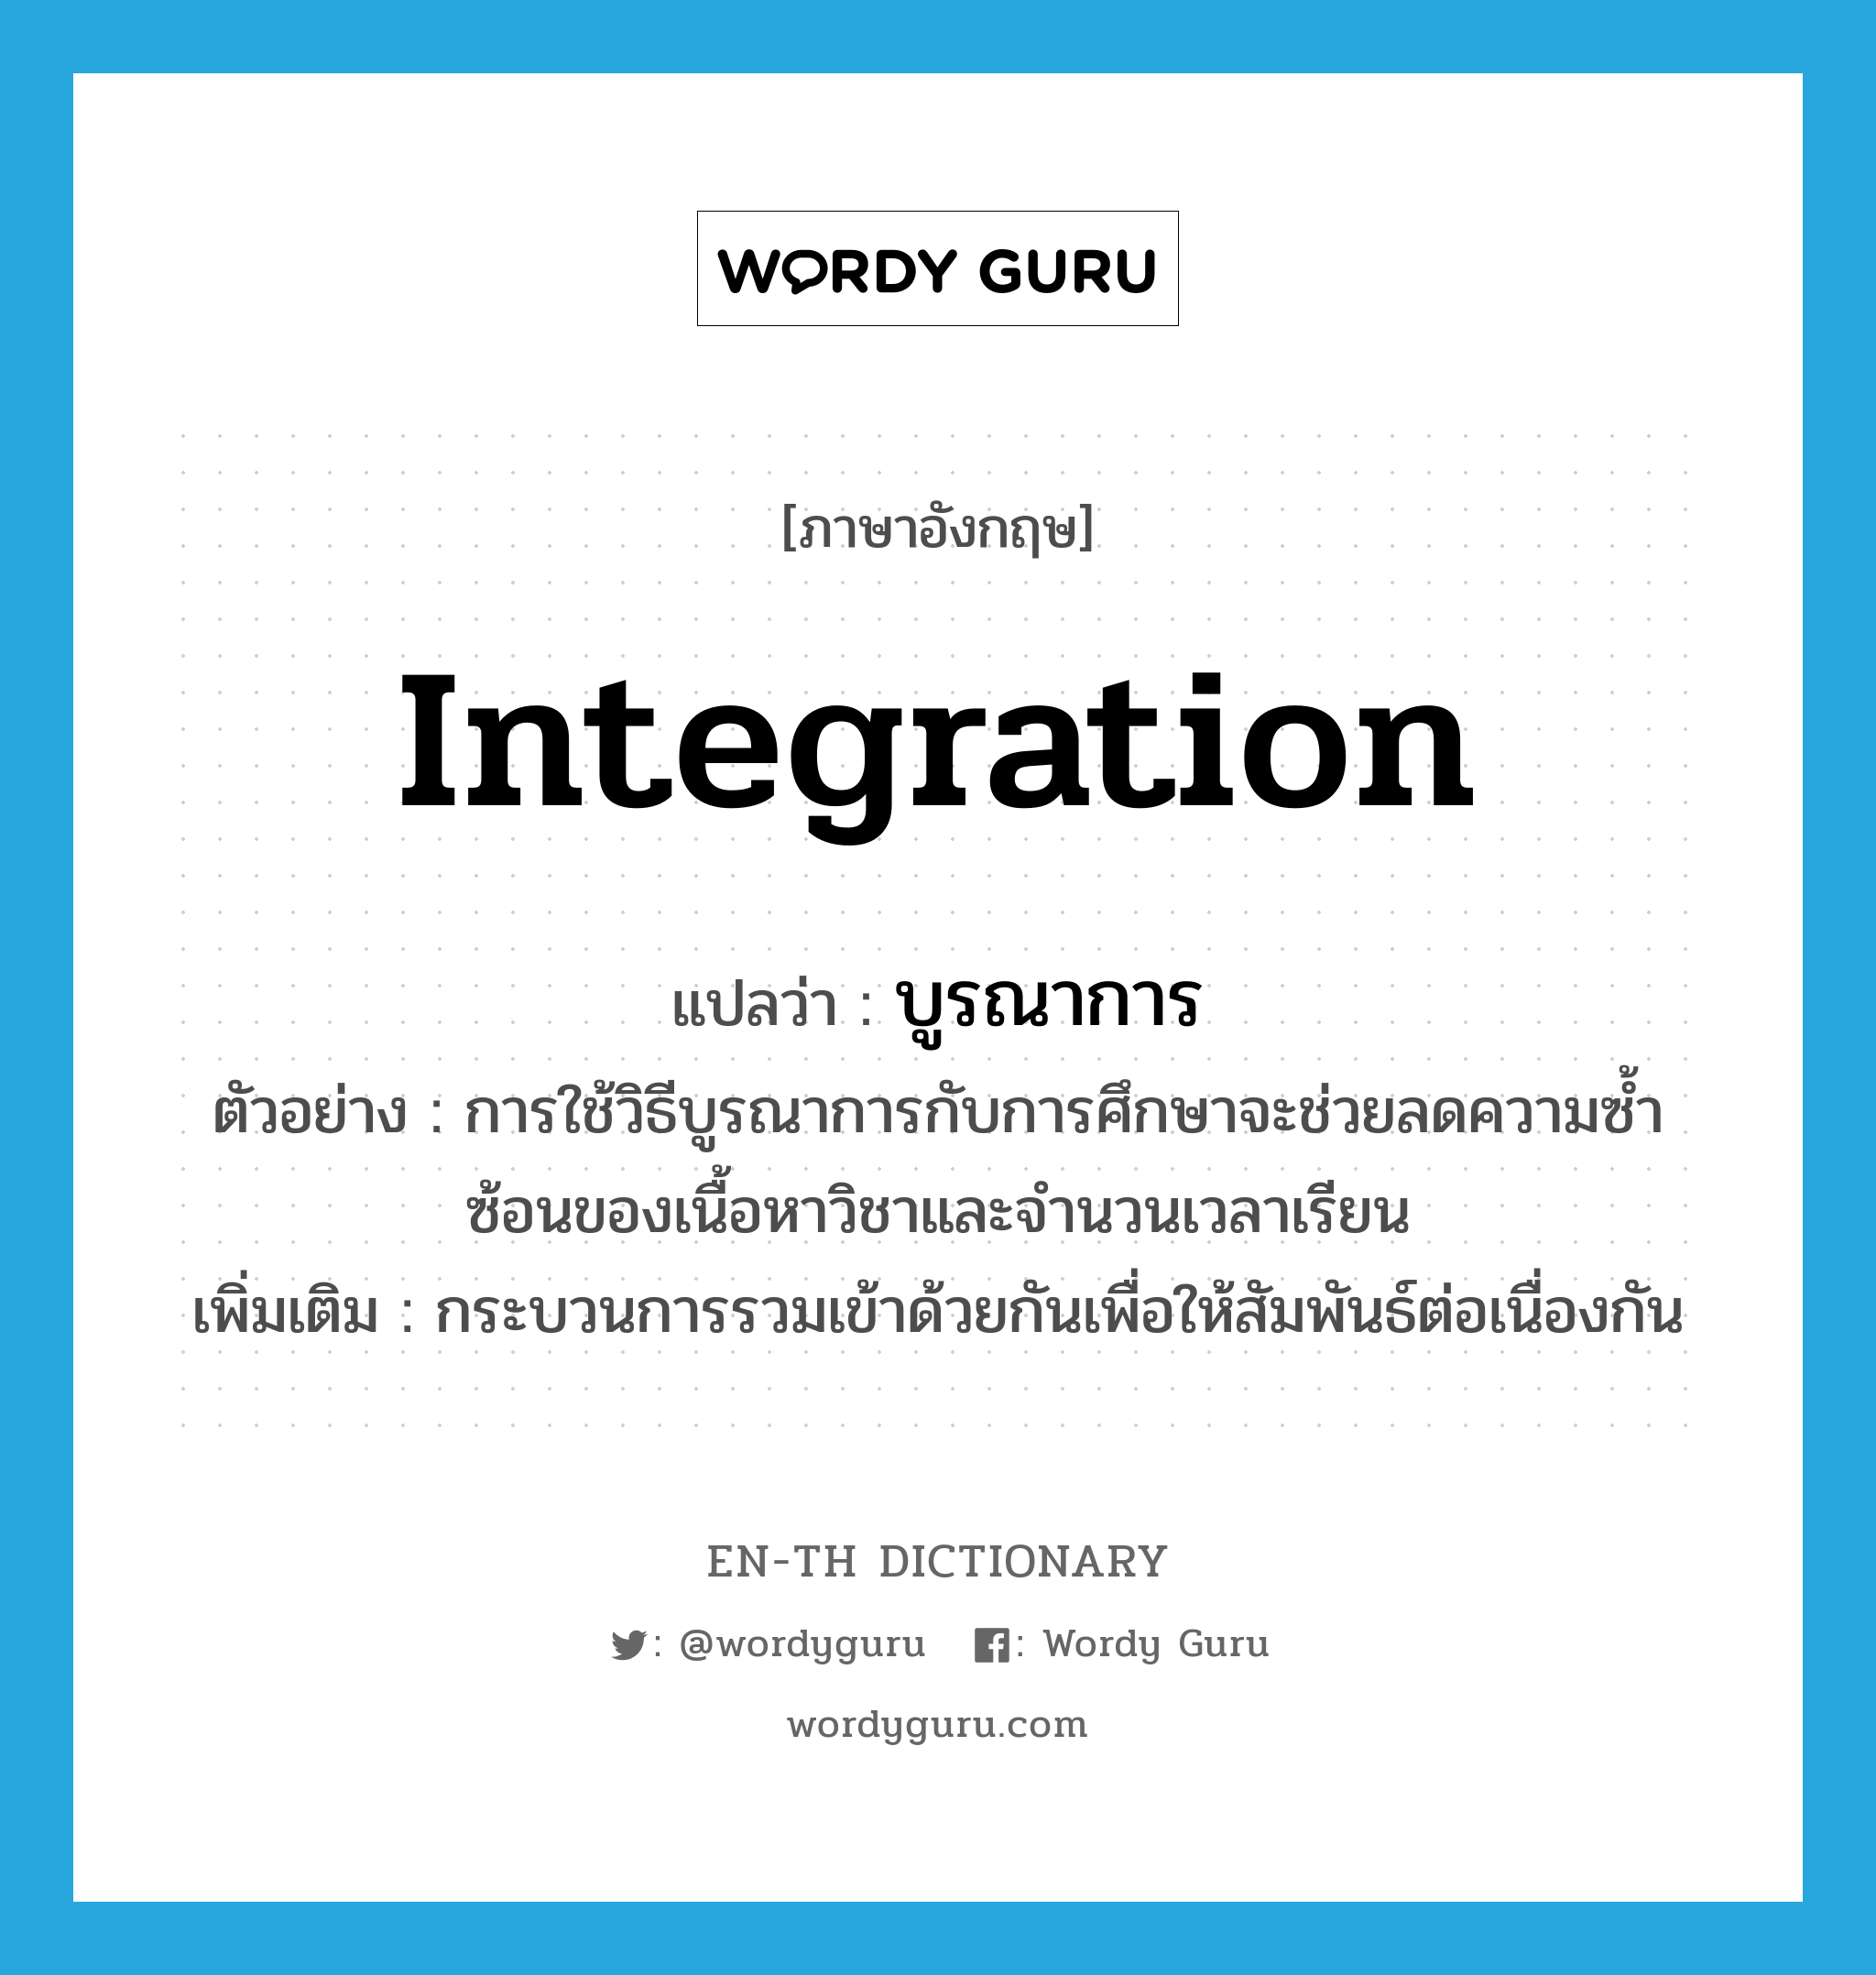 integration แปลว่า?, คำศัพท์ภาษาอังกฤษ integration แปลว่า บูรณาการ ประเภท N ตัวอย่าง การใช้วิธีบูรณาการกับการศึกษาจะช่วยลดความซ้ำซ้อนของเนื้อหาวิชาและจำนวนเวลาเรียน เพิ่มเติม กระบวนการรวมเข้าด้วยกันเพื่อให้สัมพันธ์ต่อเนื่องกัน หมวด N